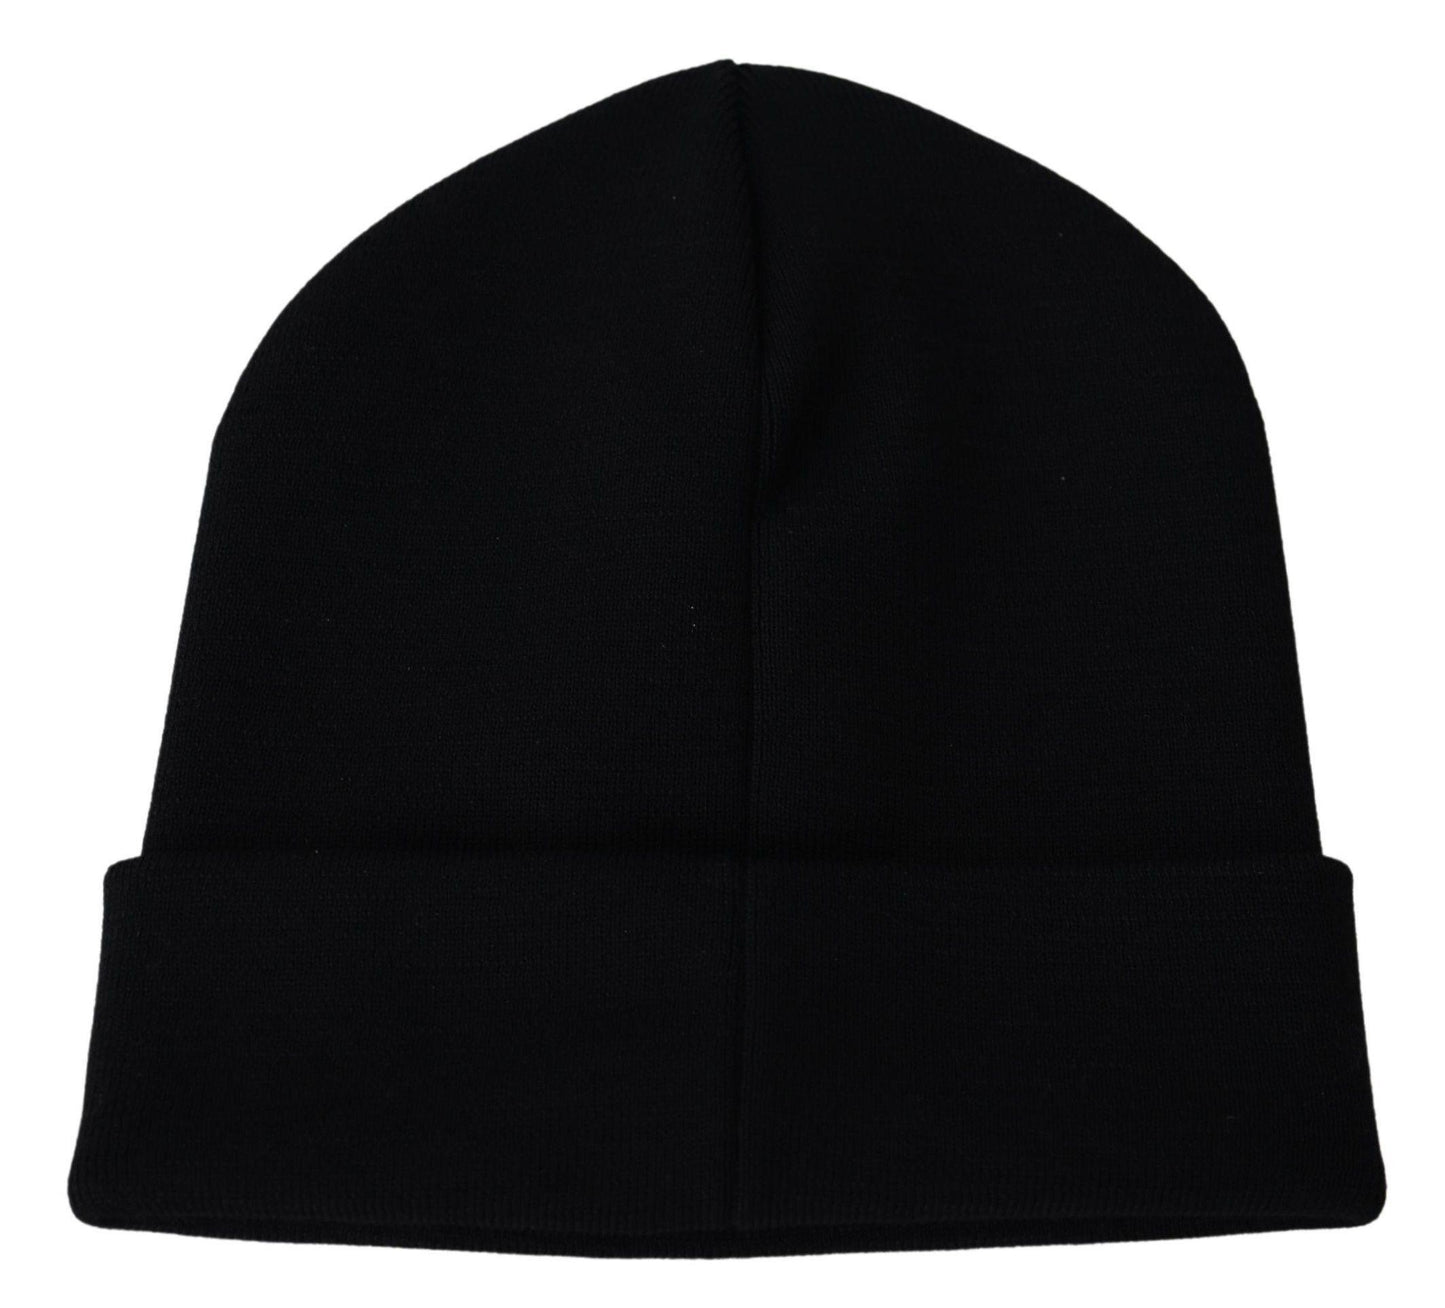 Givenchy Men's Black Wool Unisex Winter Warm Beanie Hat